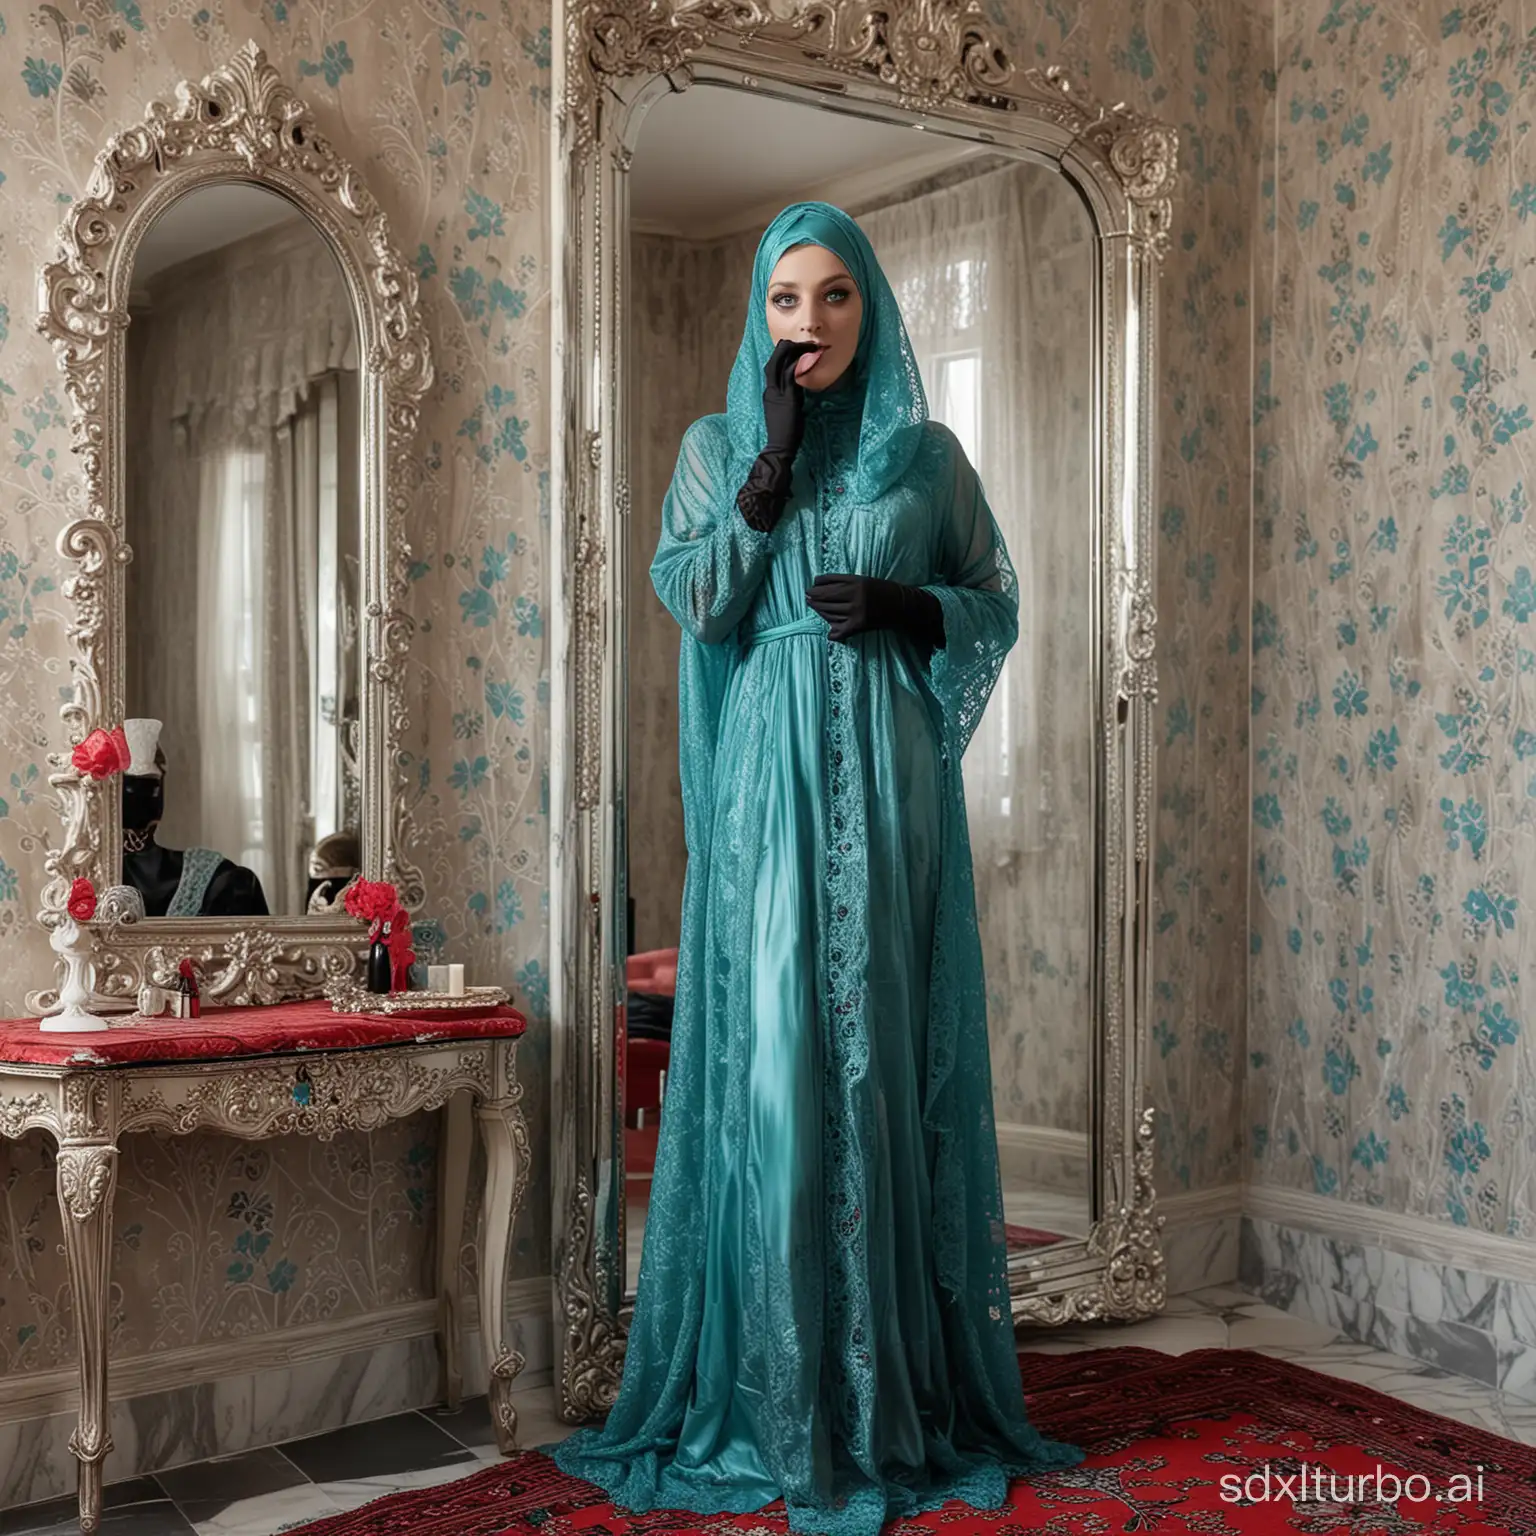 Feminized-Man-in-Turquoise-Burka-in-Luxury-Bedroom